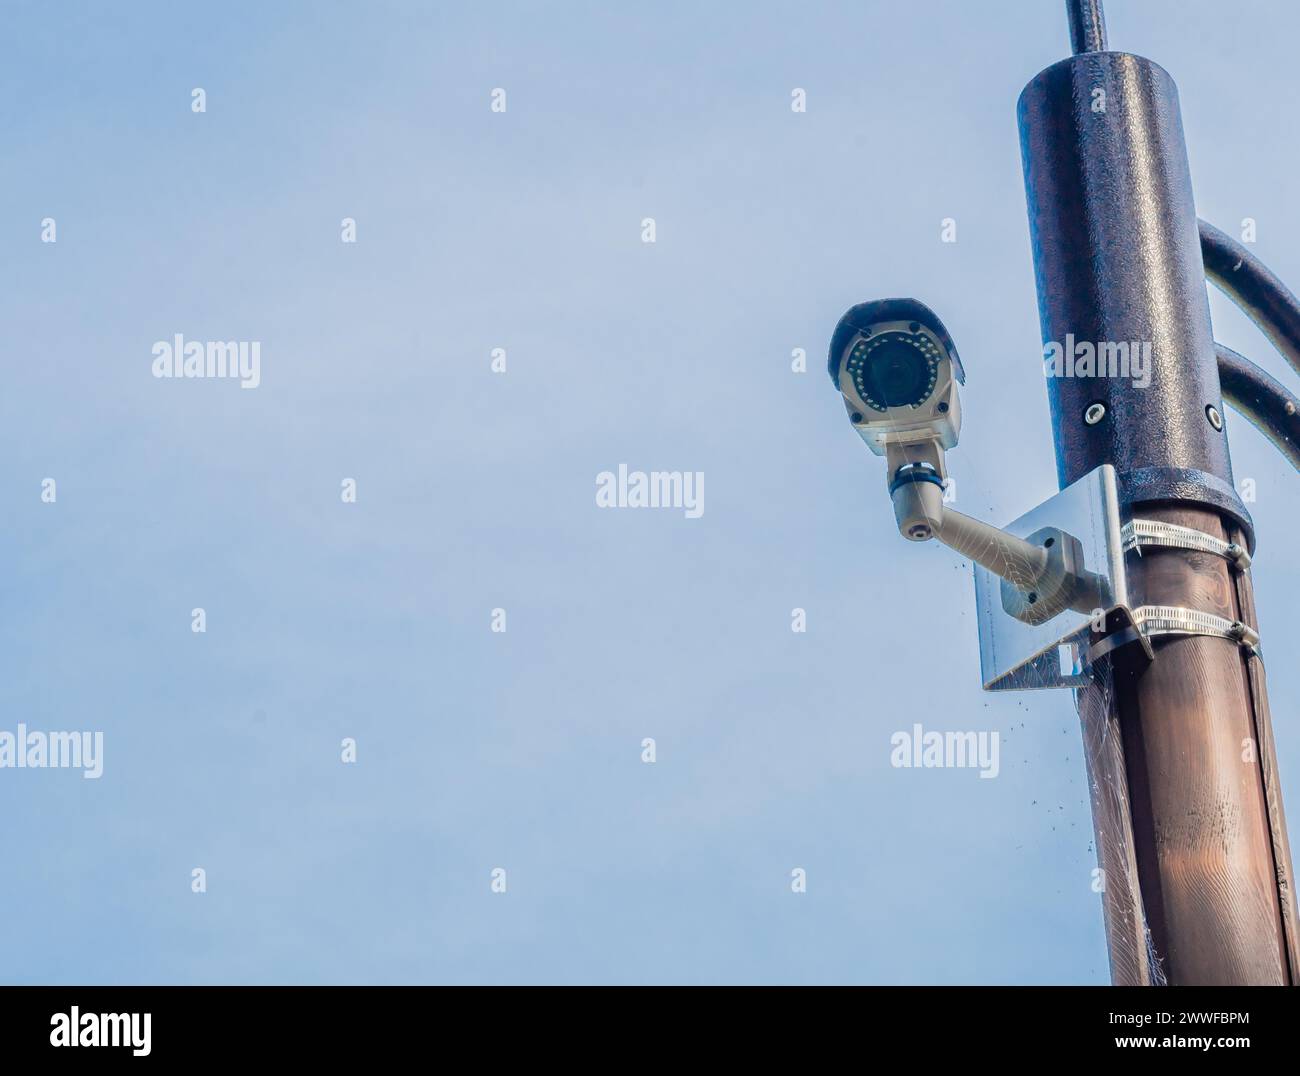 Cámara de vigilancia montada en poste de luz de metal con cielo azul y nubes blancas hinchadas en el fondo en Corea del Sur Foto de stock